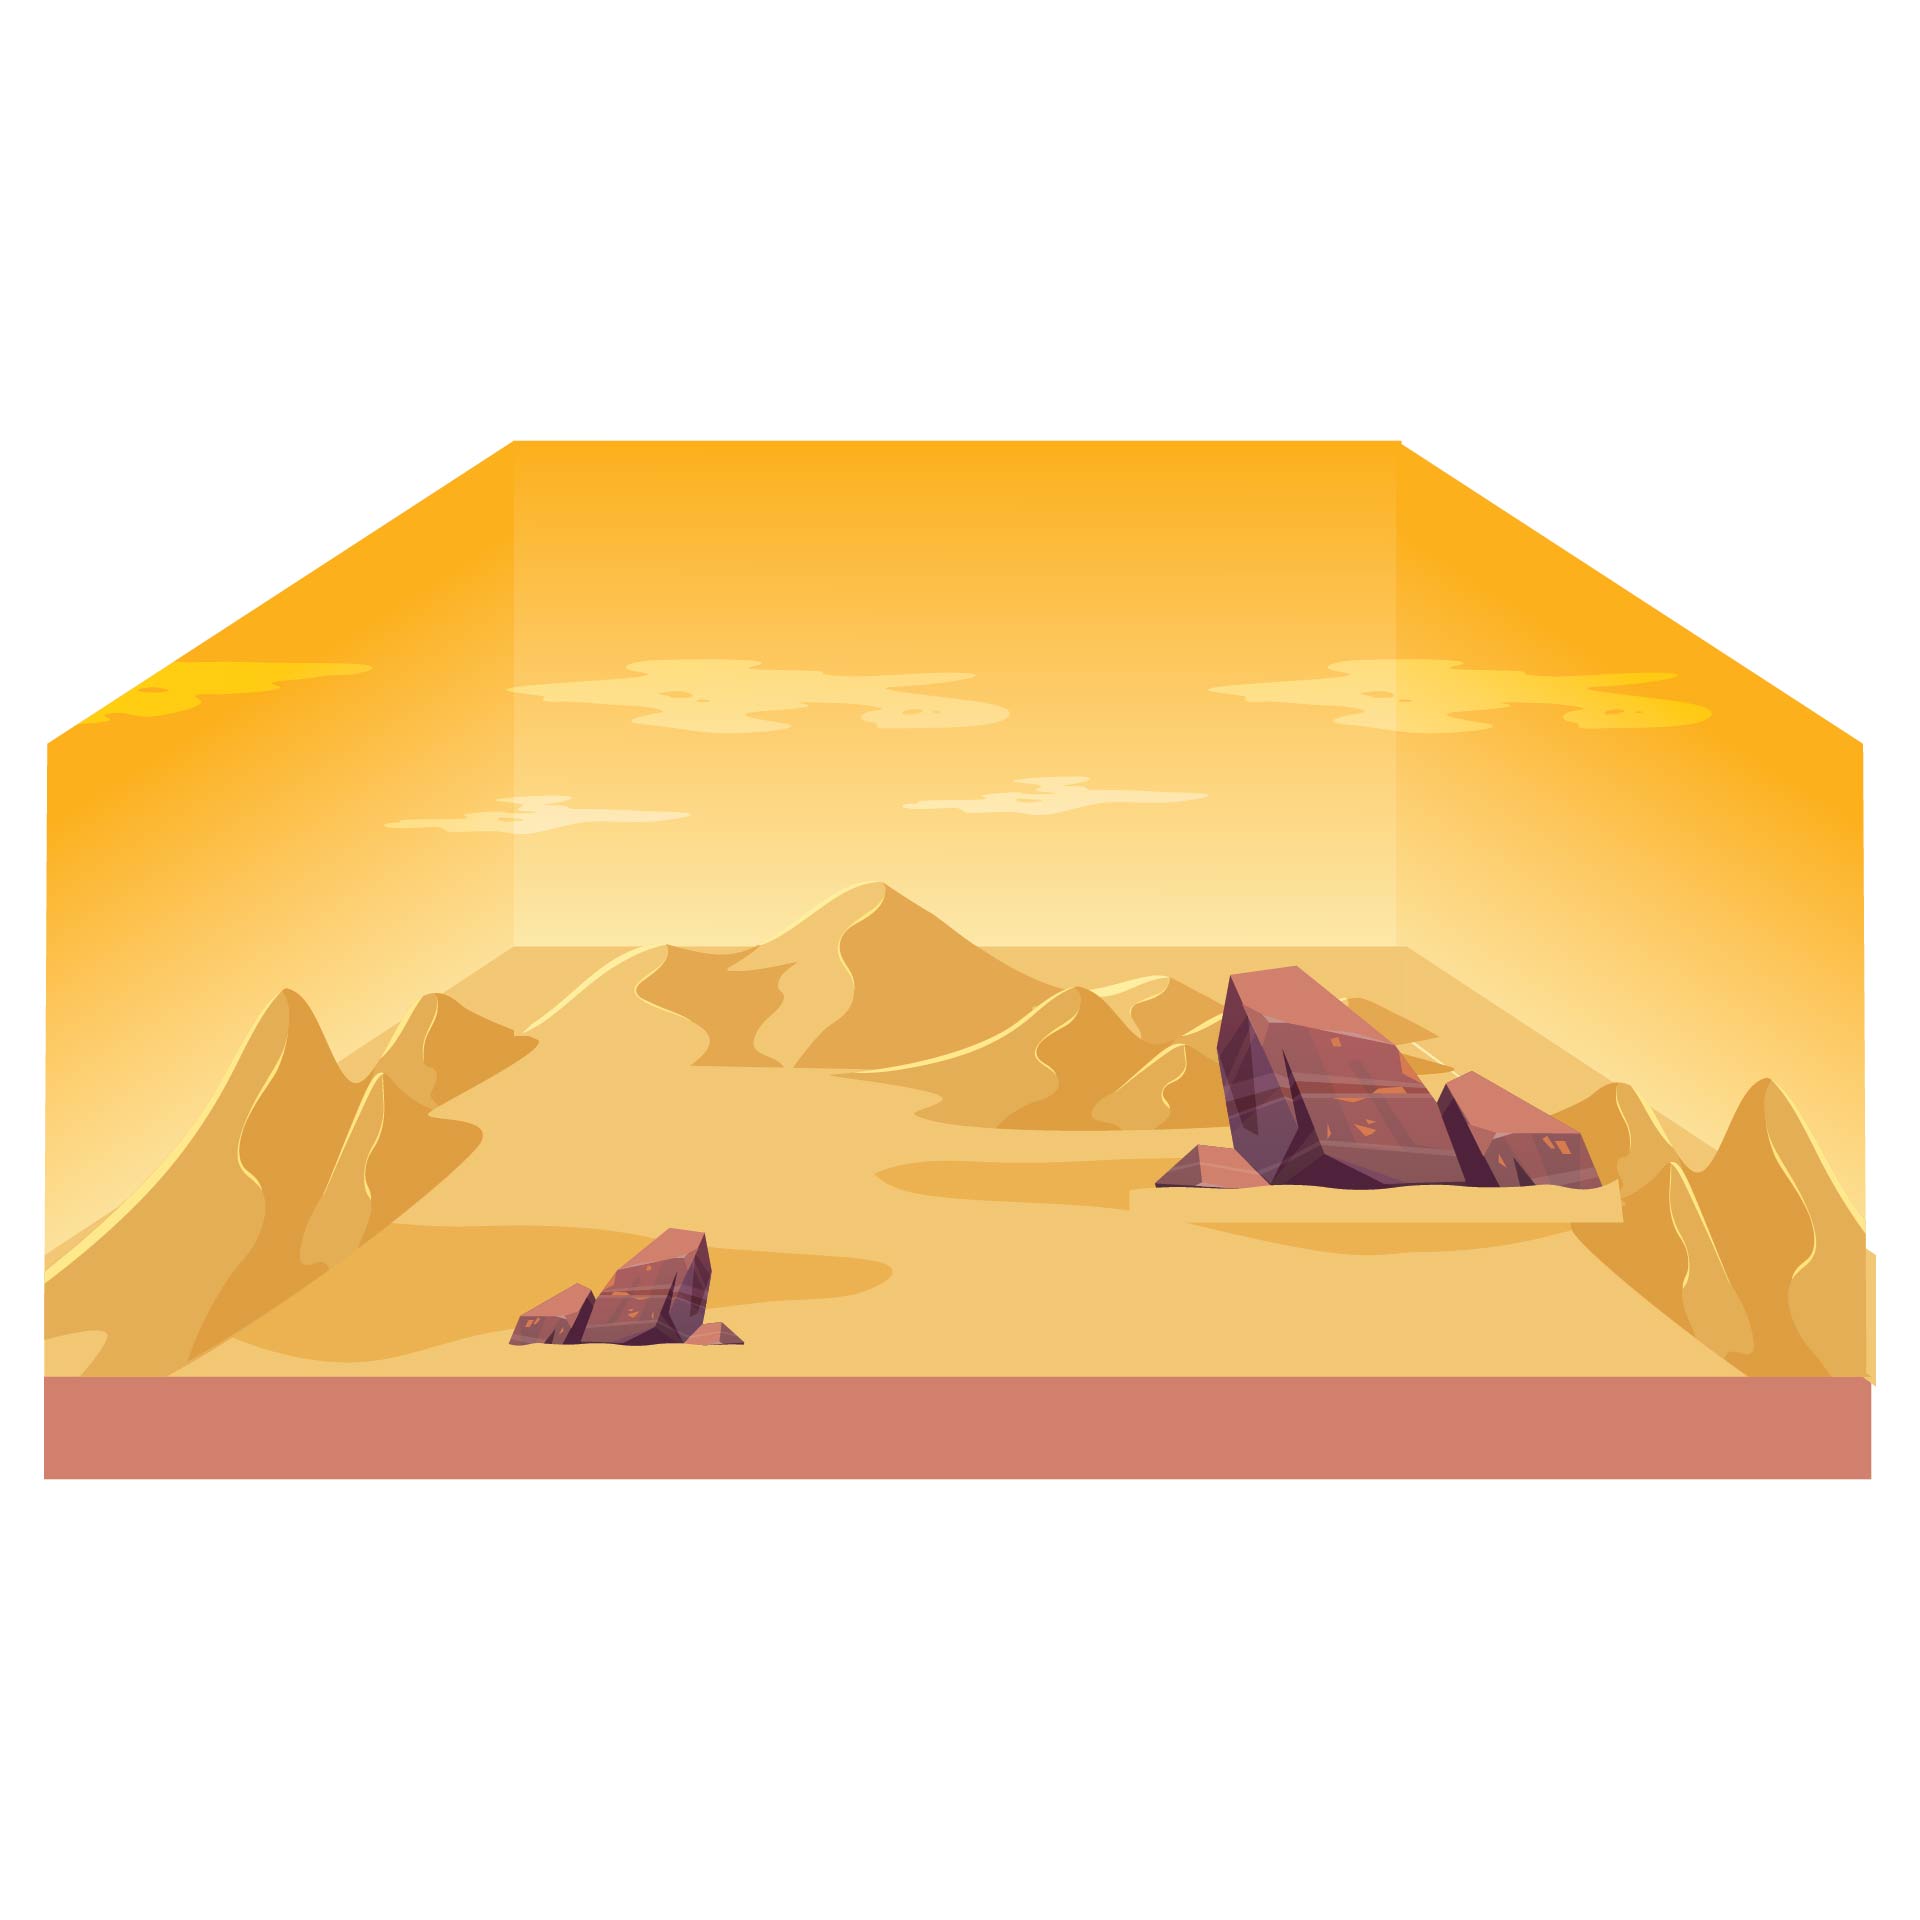 Printable Desert Backgrounds